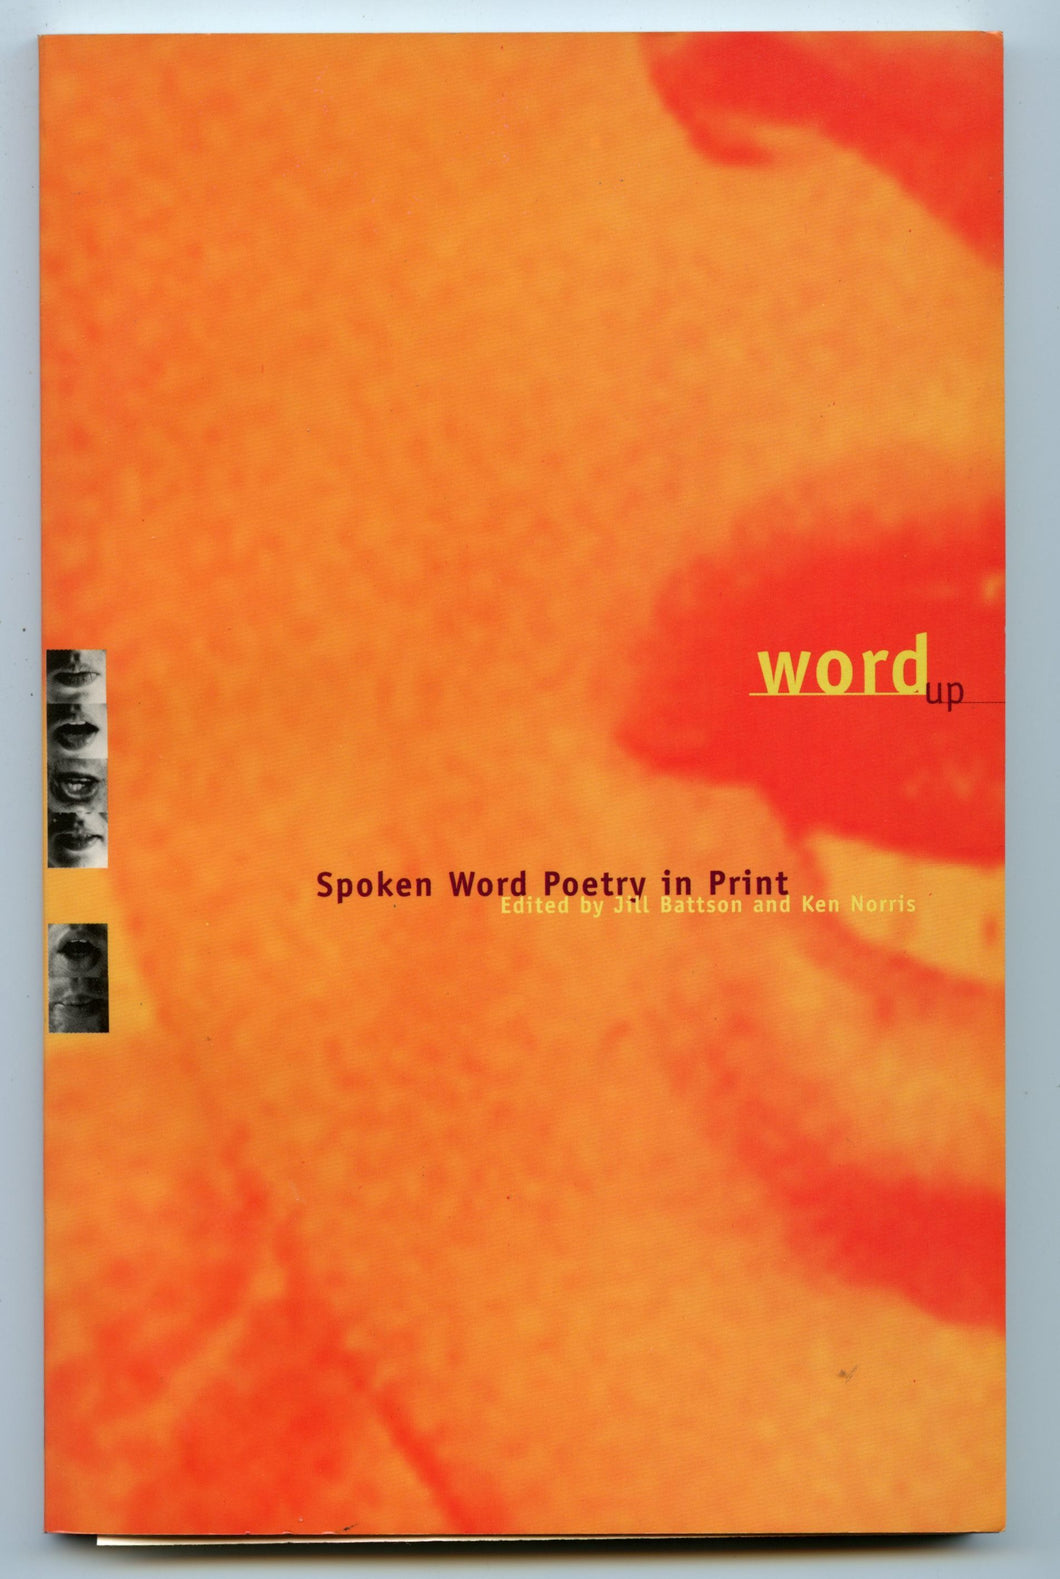 word up: Spoken Word Poetry in Print